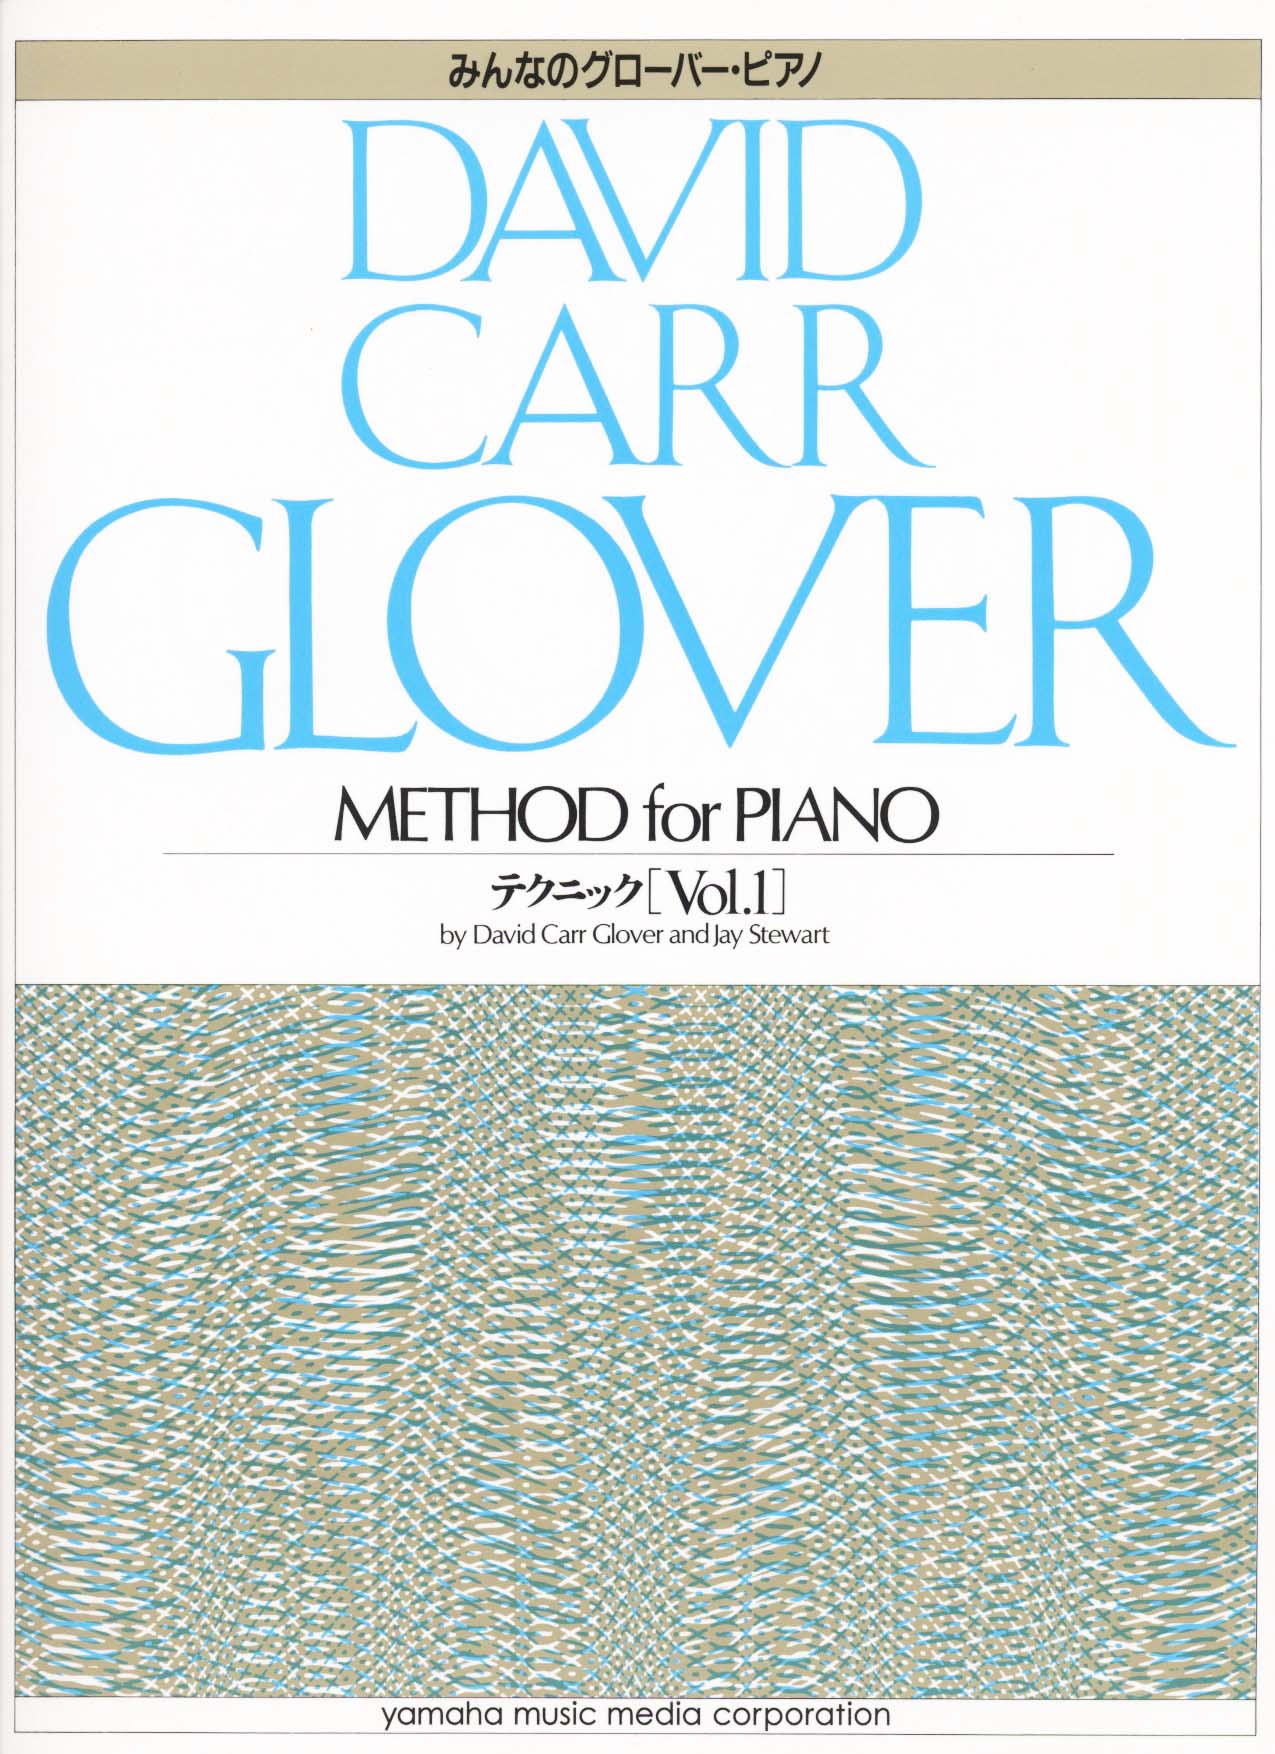 グローバー・ピアノ教育ライブラリー みんなのグローバー ピアノテクニック Vol.1